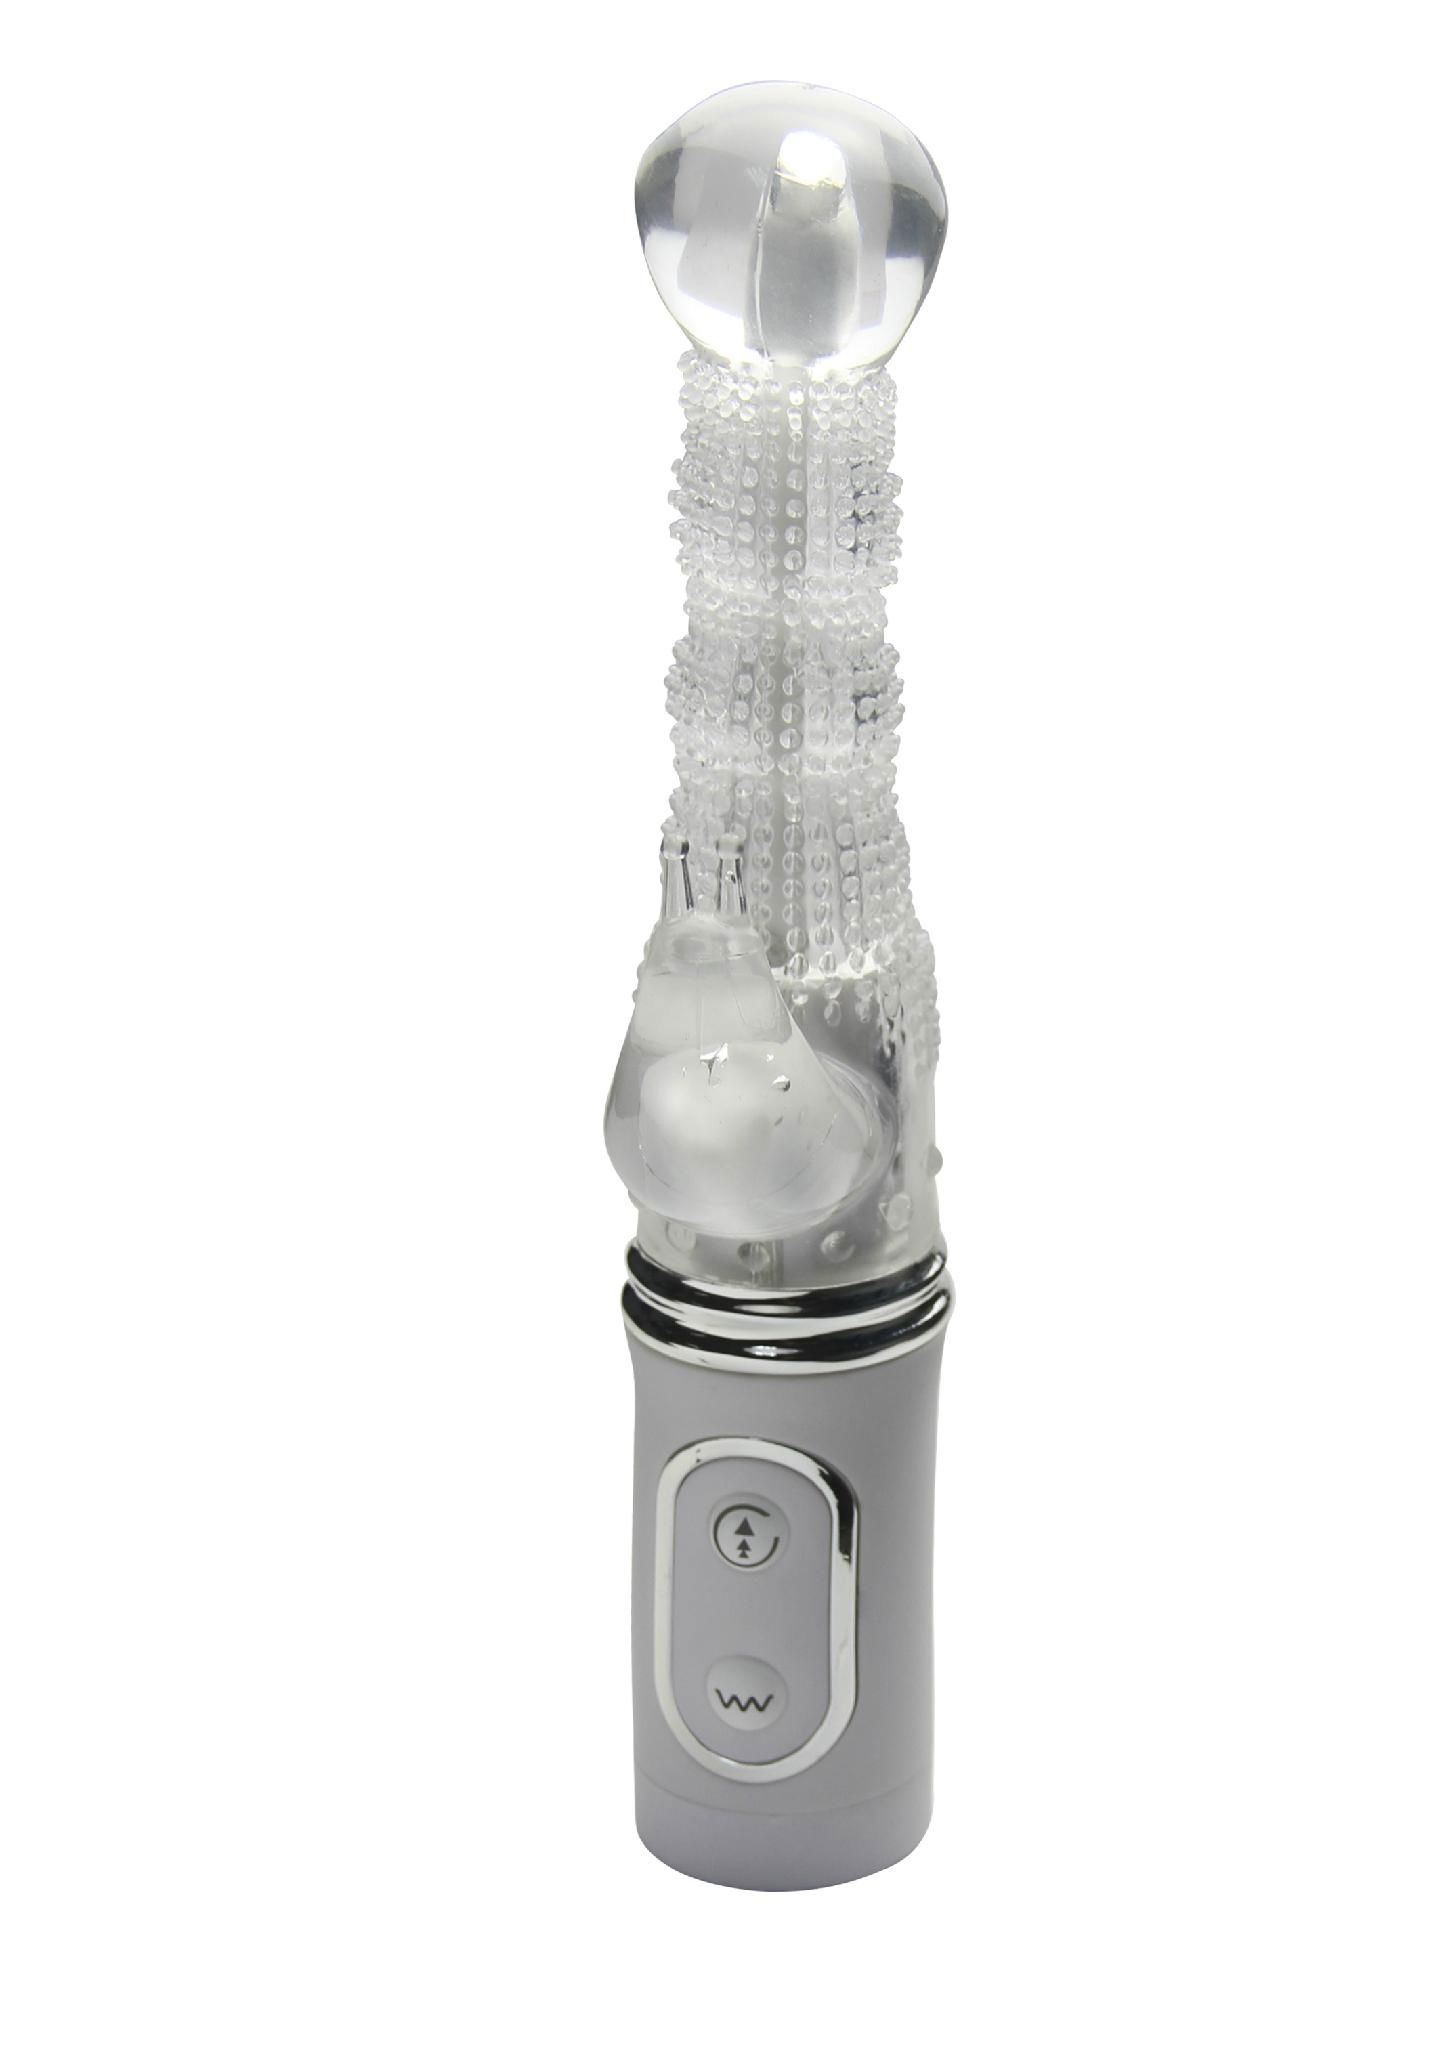 Magic Diamond Dual G-spot Vibrators Vibrating massager products for female 2